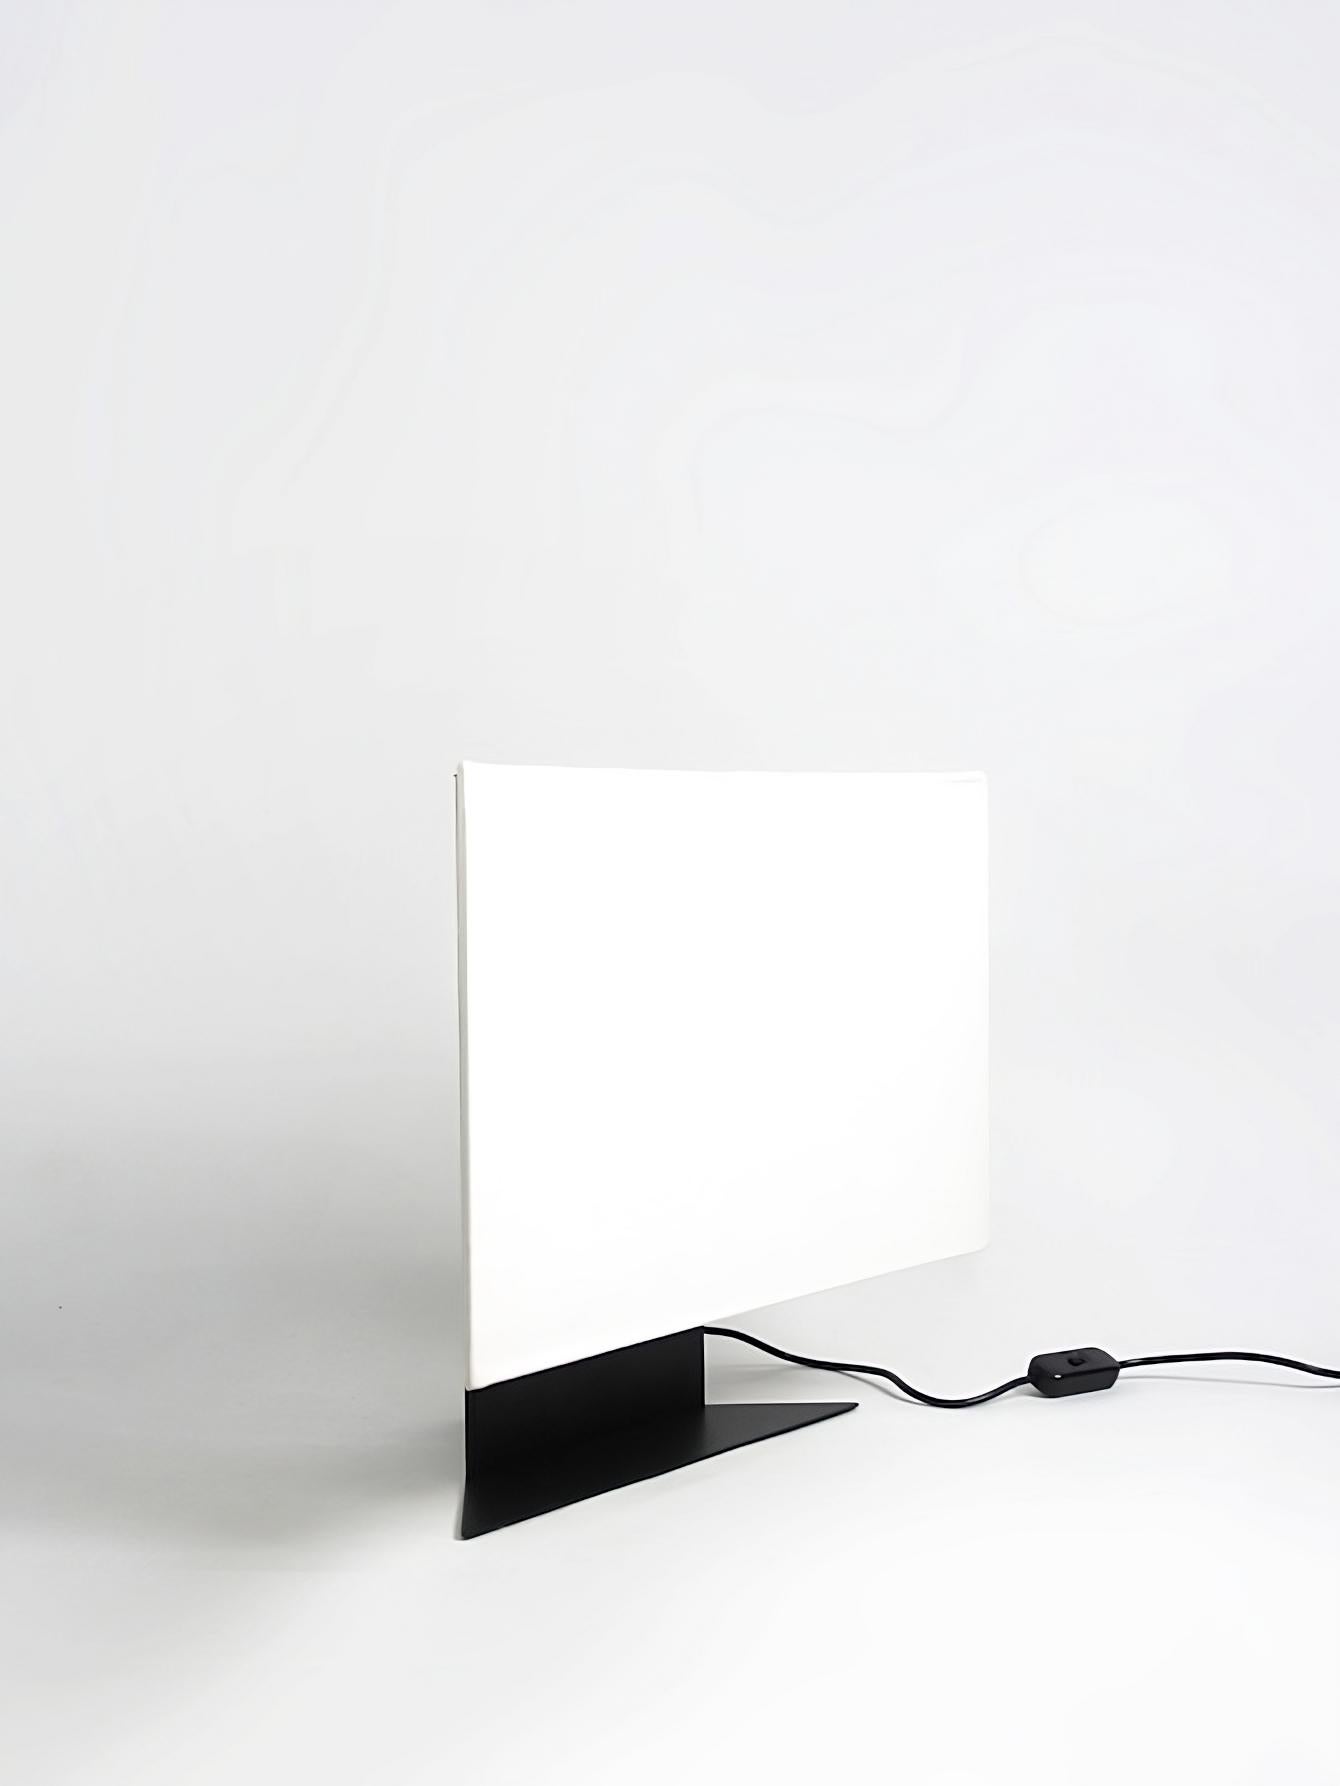 La lampe Accademia, conçue par Cini Boeri en 1978, est une version à petite échelle de la célèbre lampe de table créée pour Artemide. Cette lampe est un exemple impressionnant de l'approche minimaliste de Boeri en matière de design, avec son